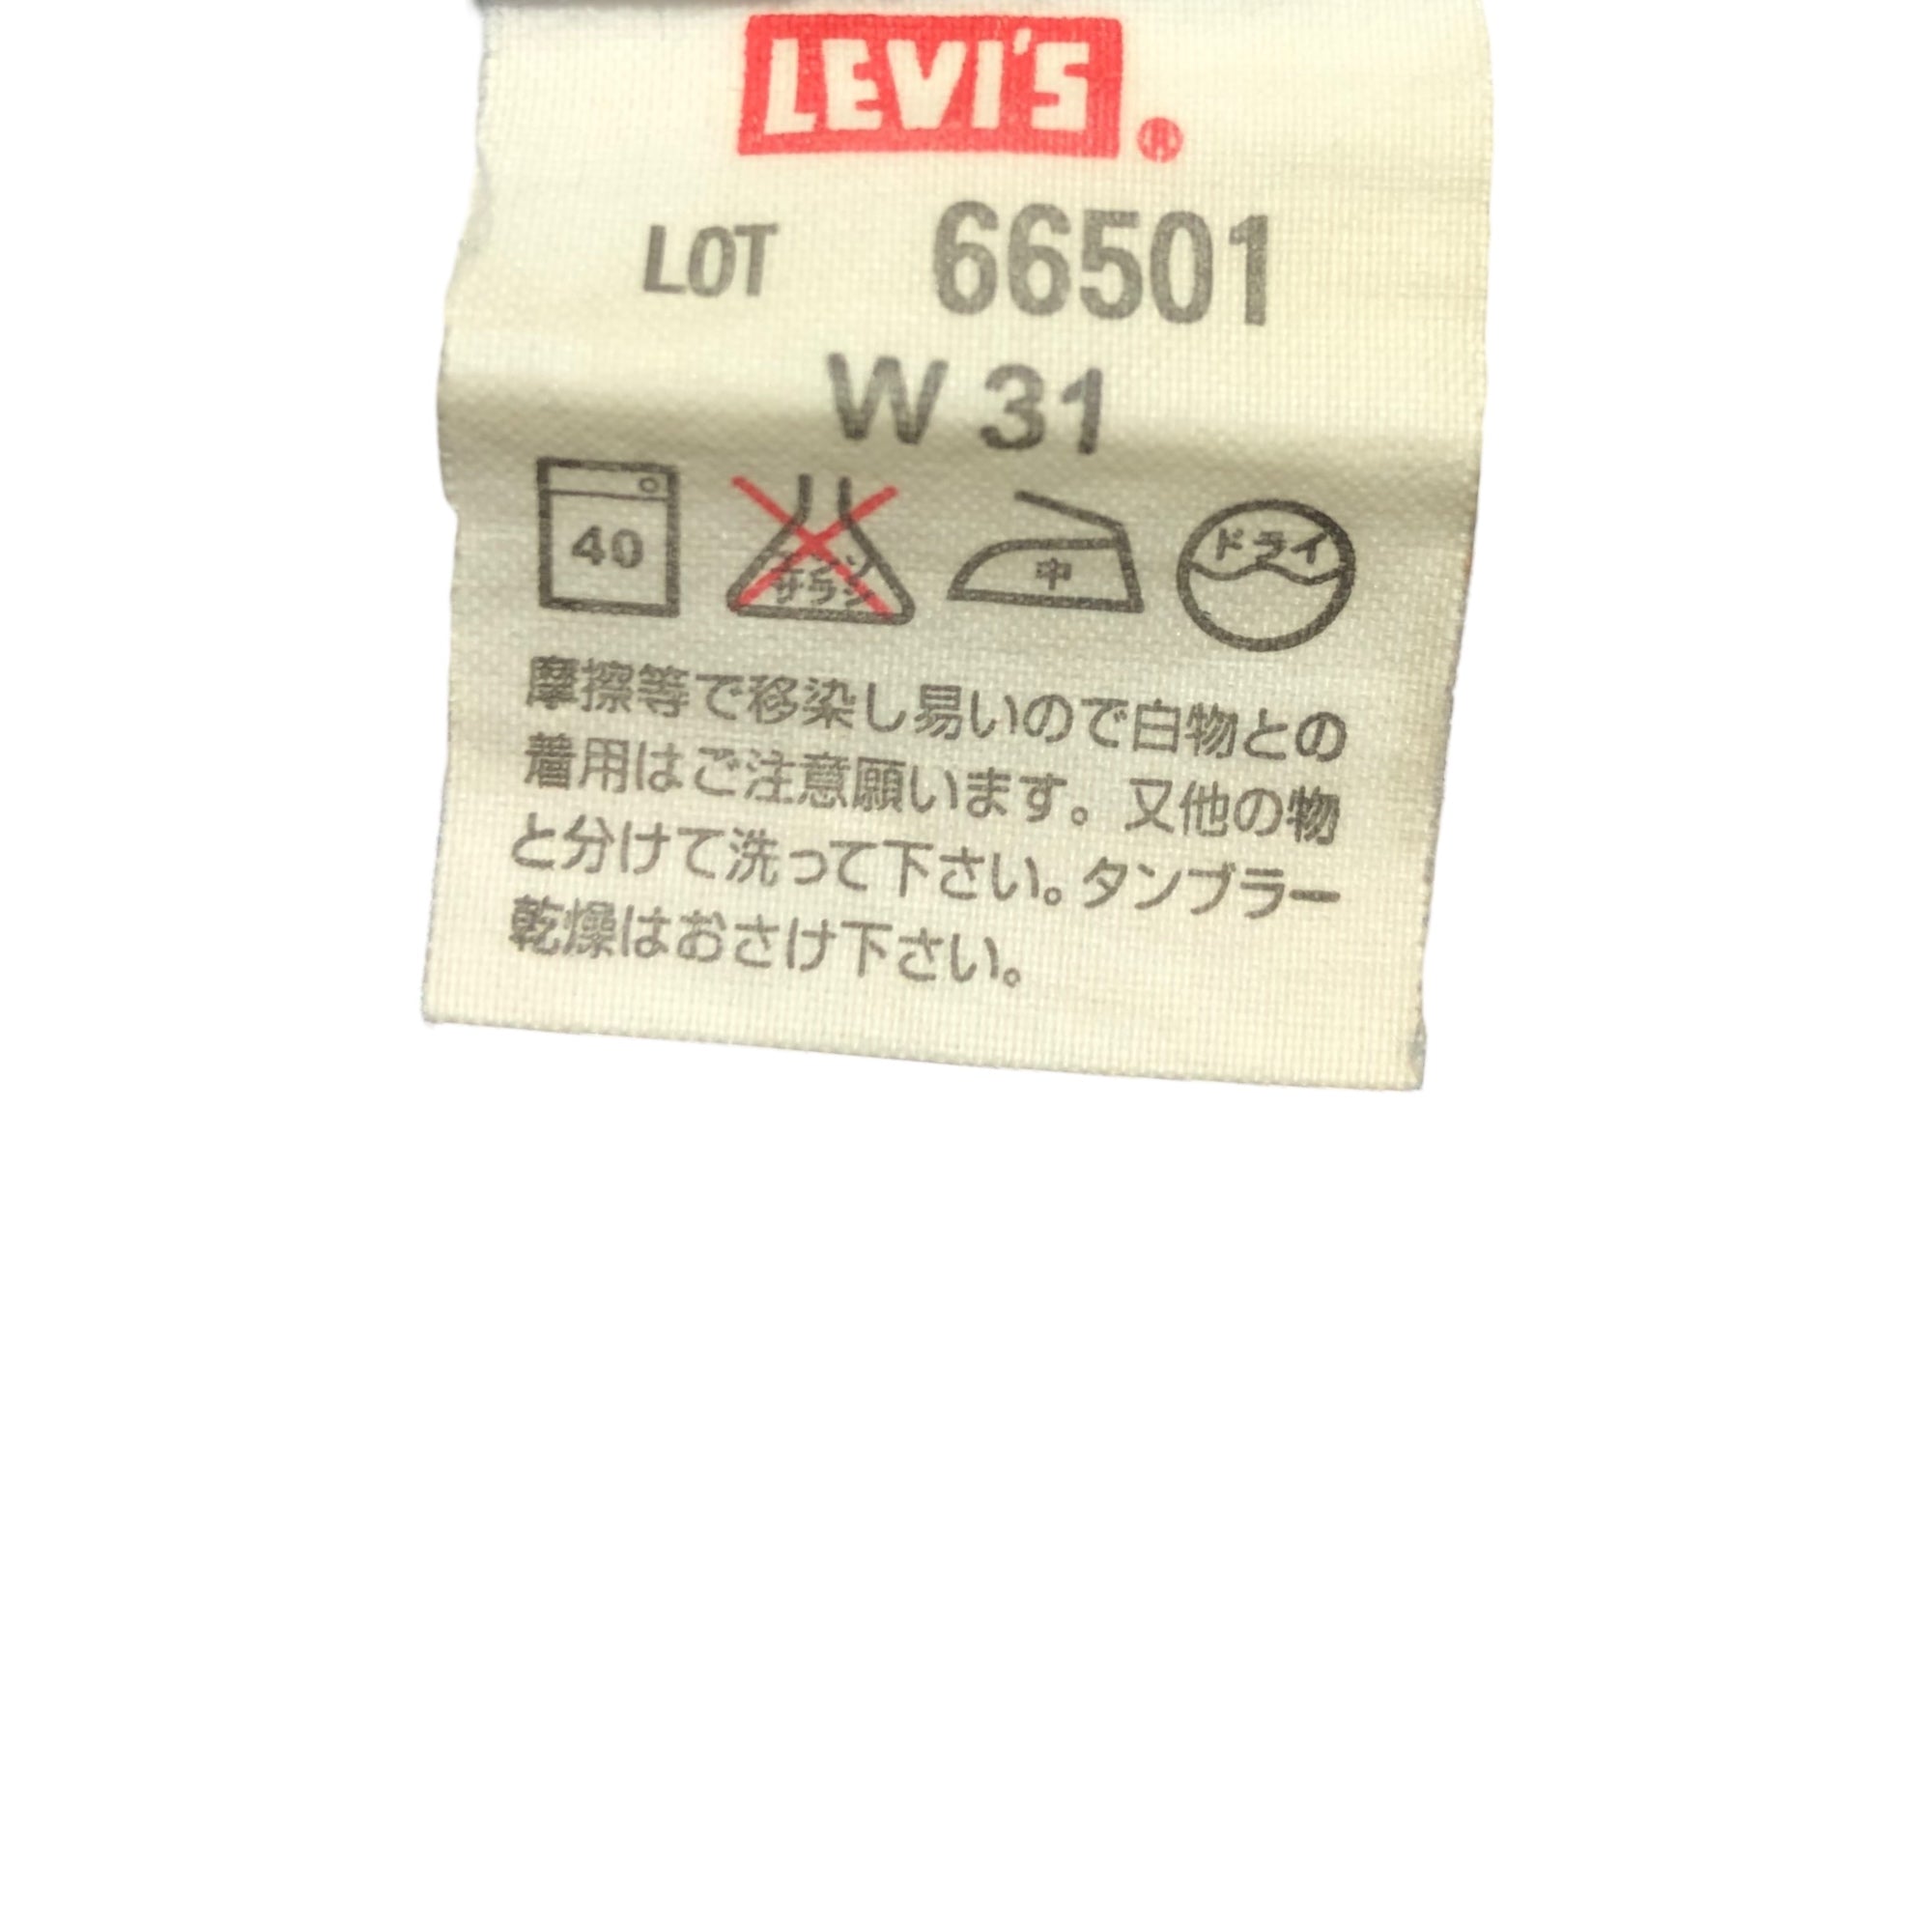 Levi's(リーバイス) 66501 復刻モデル BIGE 赤耳 31 インディゴ パッチ欠損